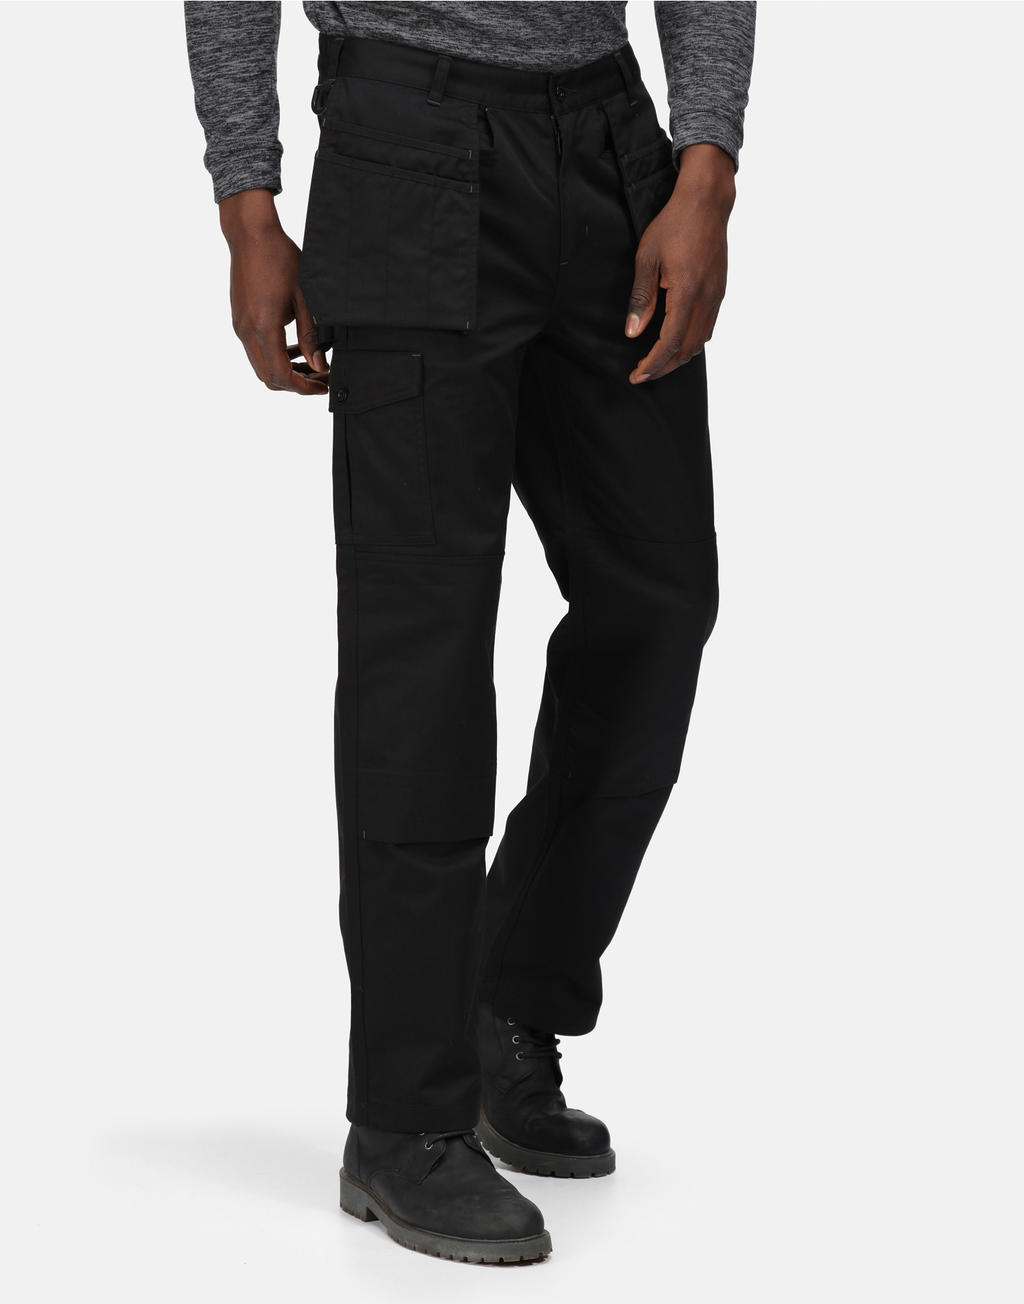  Pro Cargo Holster Trouser (Reg) in Farbe Black